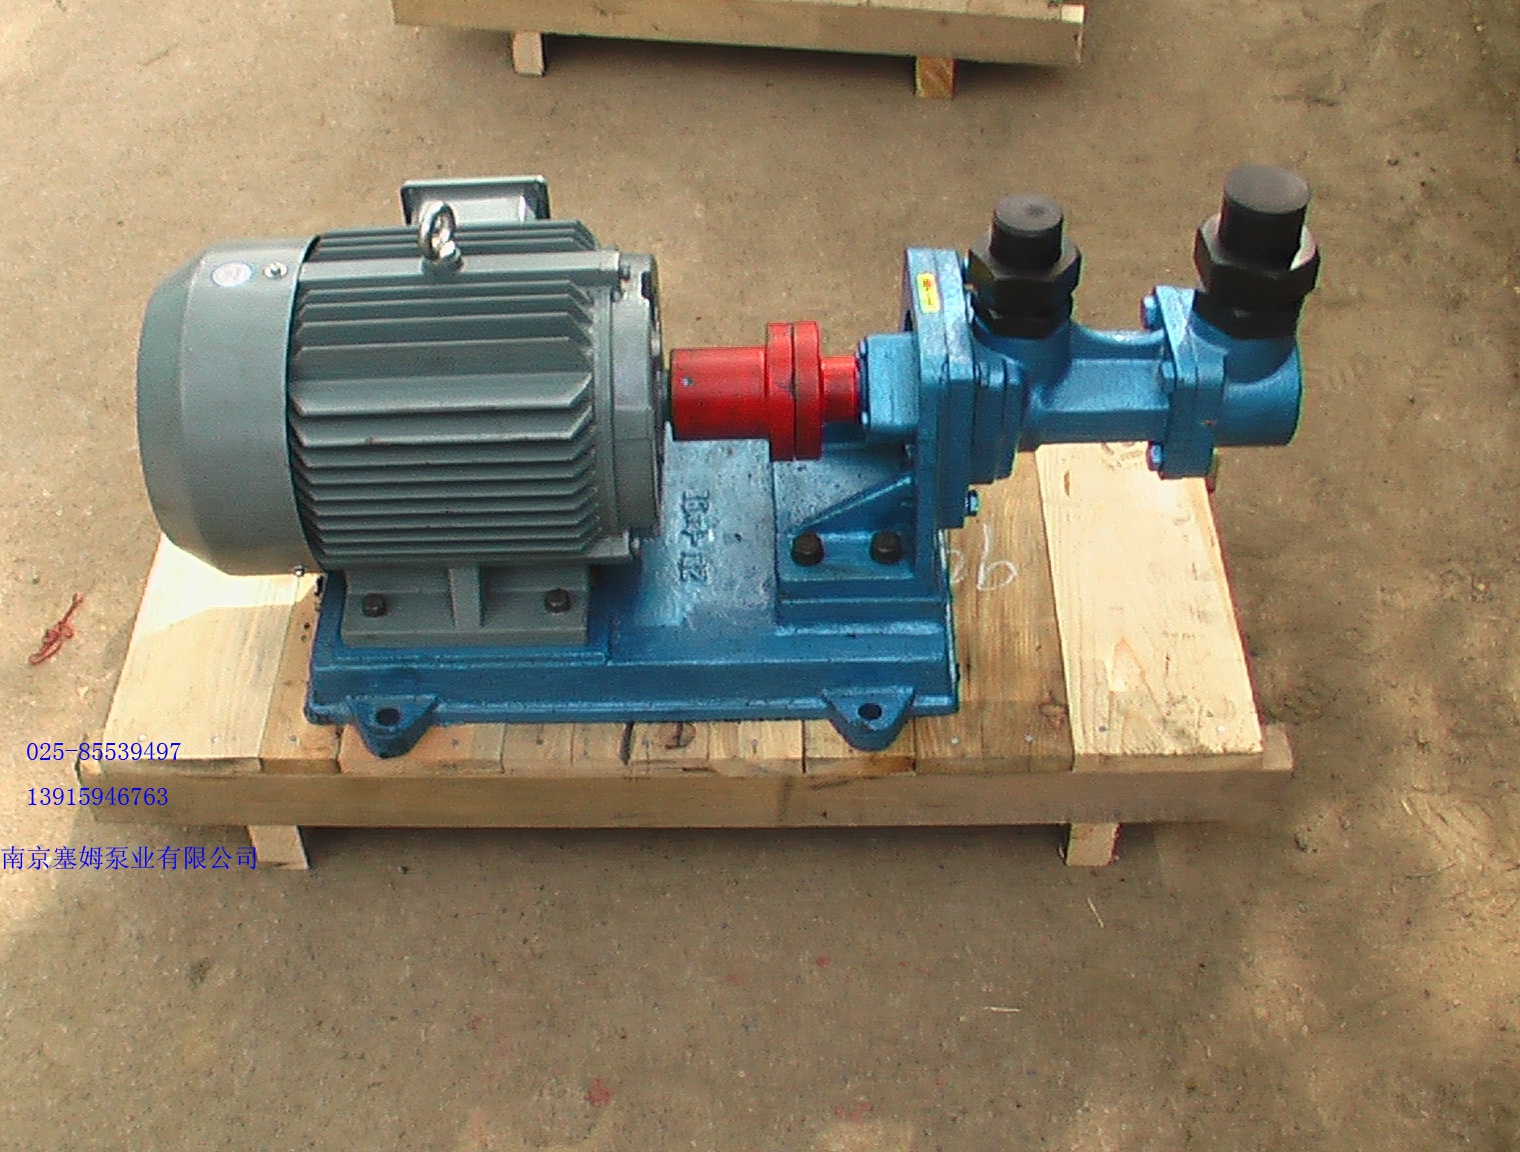 供应3GF30×4-46高炉密封螺杆泵/3G60×3-52南京三螺杆泵